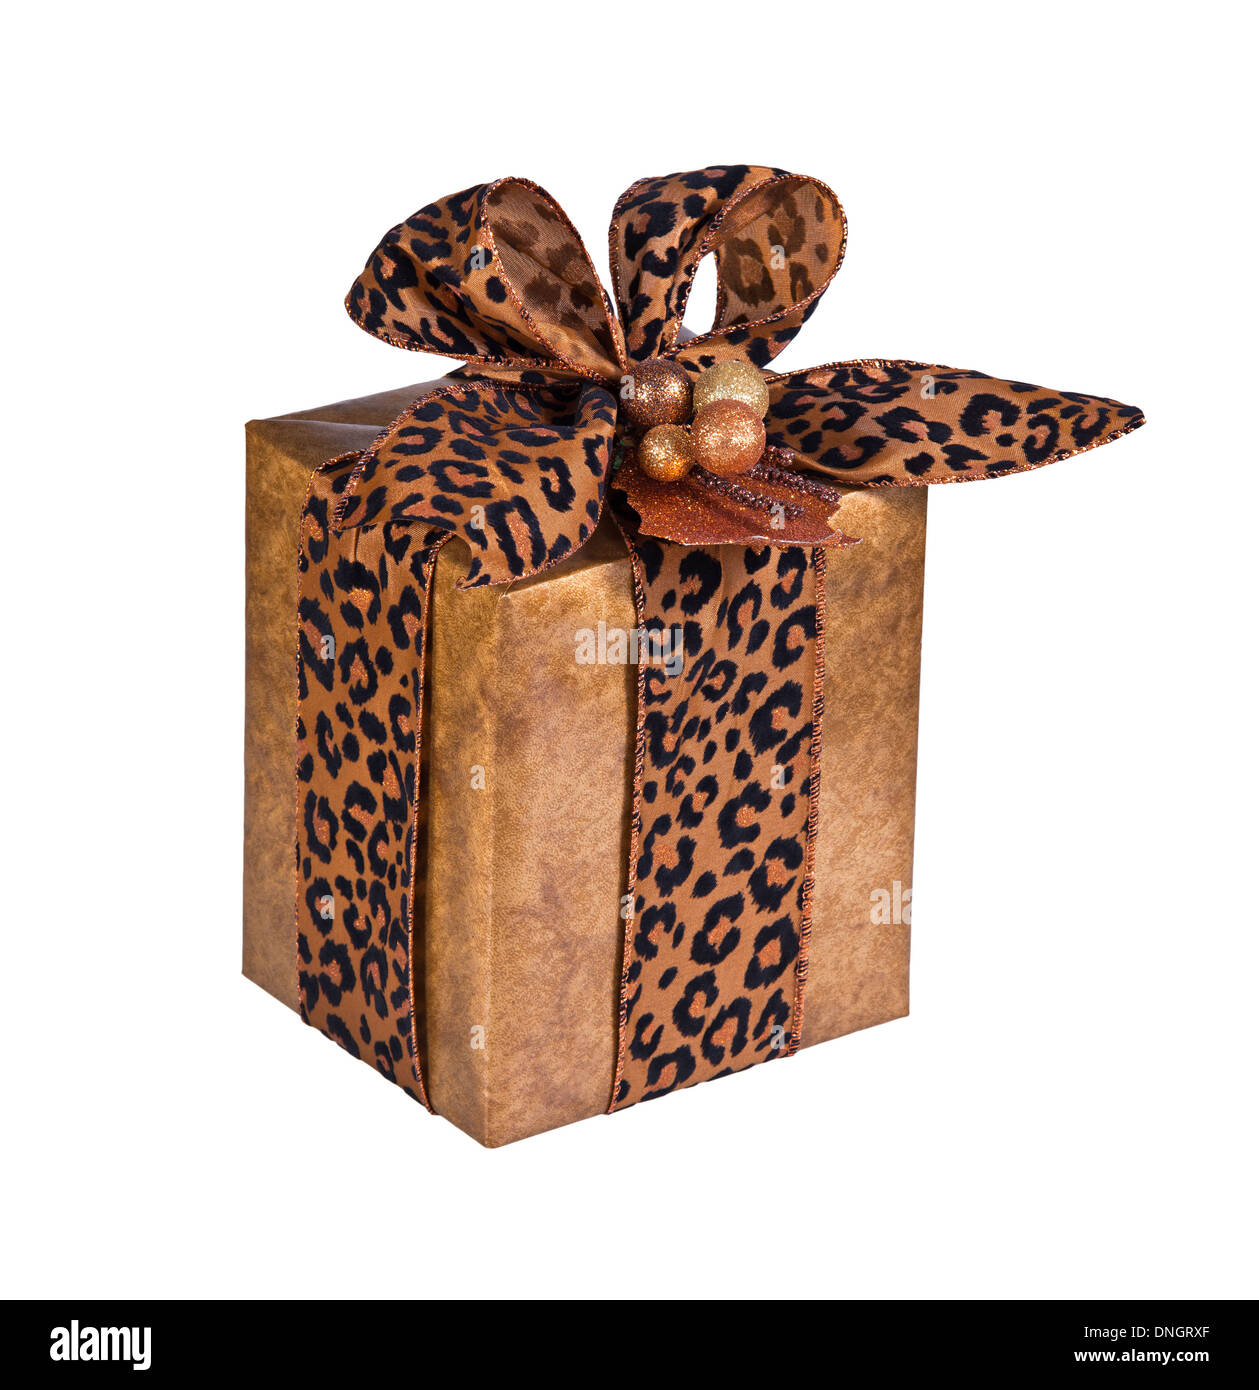 Présent festif enveloppé dans du papier cadeau en faux cuir avec ruban imprimé animal isolated over white Banque D'Images